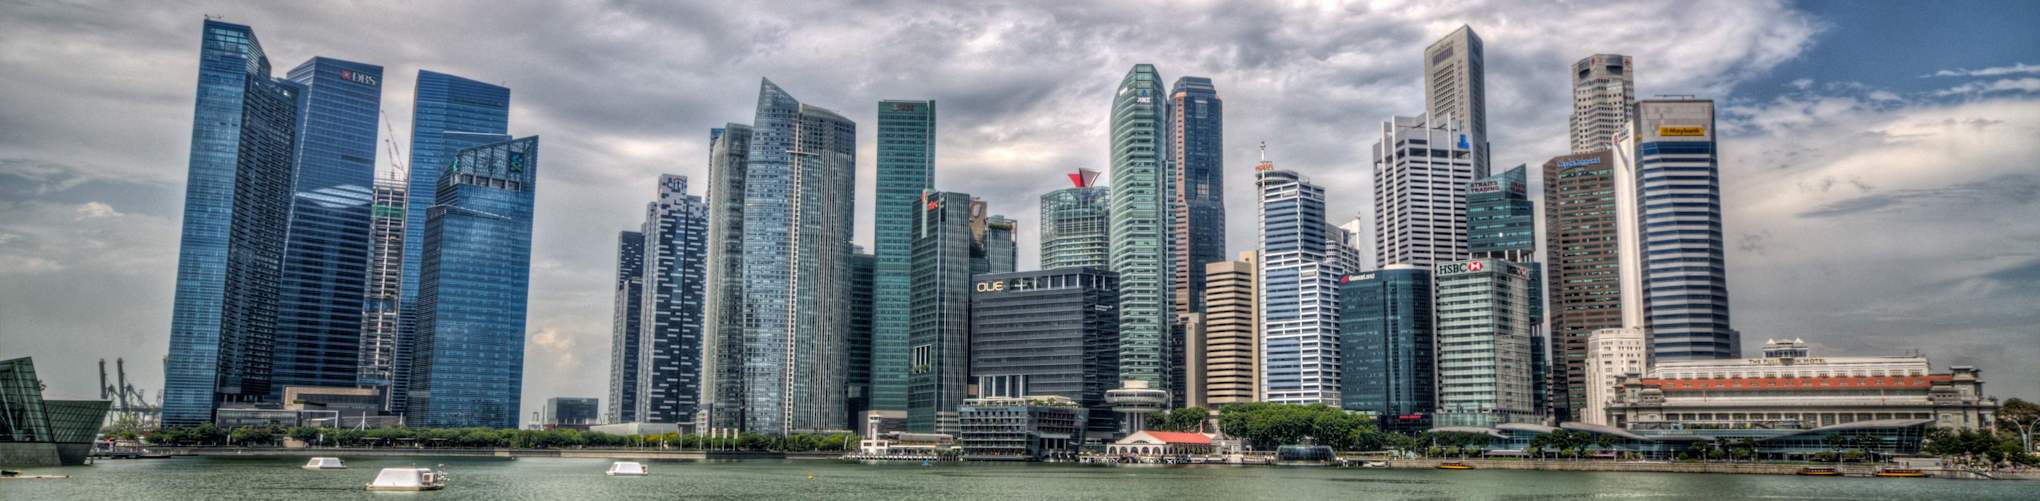 Singapur Skyline - www.mogroach.de